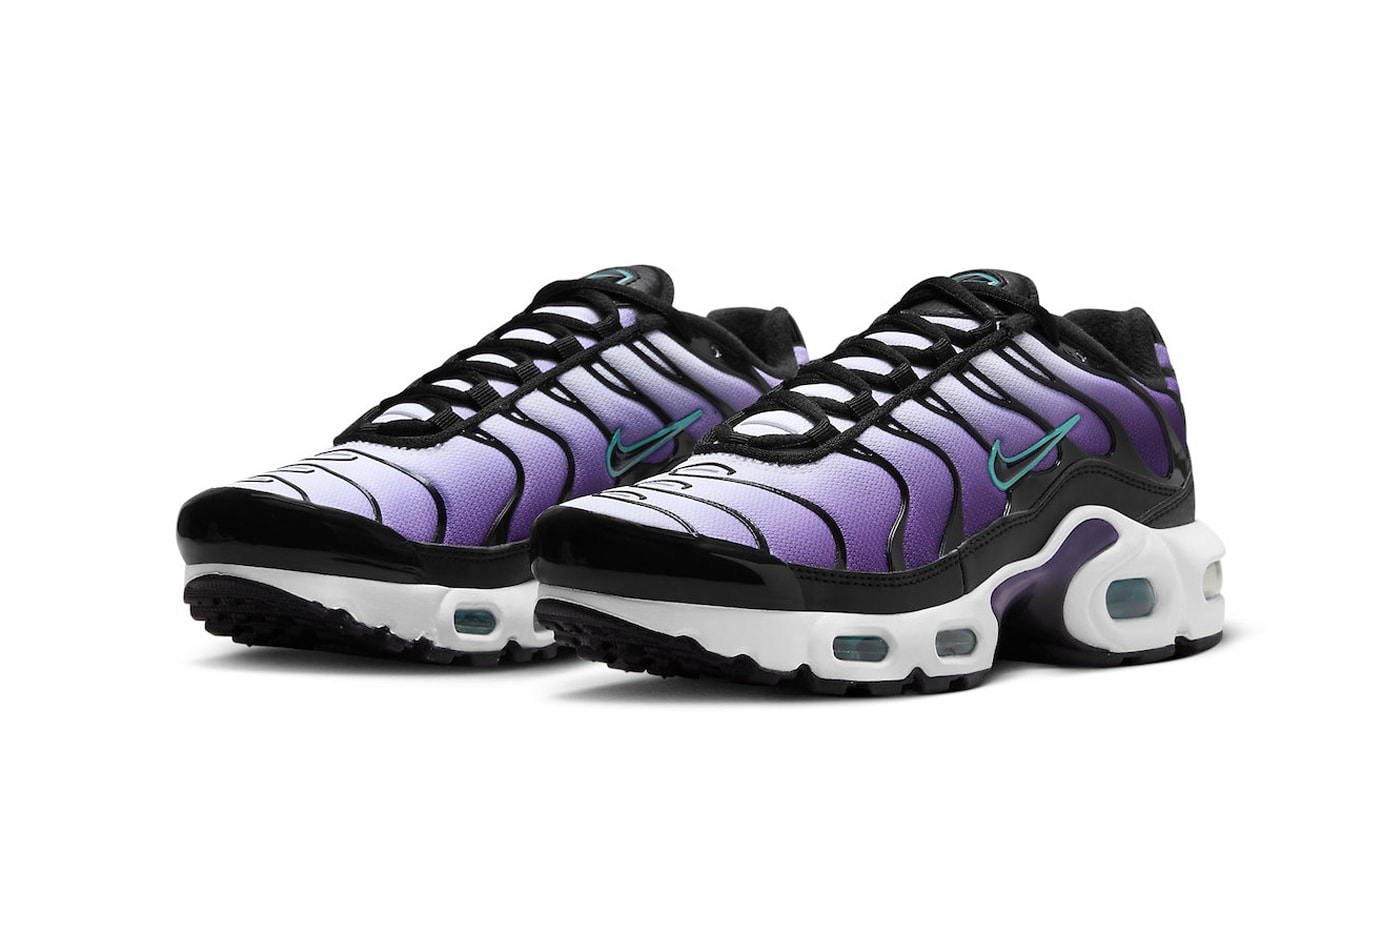 ナイキエアマックスプラスからホワイト/パープルのグラデーションを纏った新色モデルが登場 Nike Air Max Plus Gets Dressed in "Reverse Grape" FQ2415-500 purple technical sneaker athletic comfortable swoosh